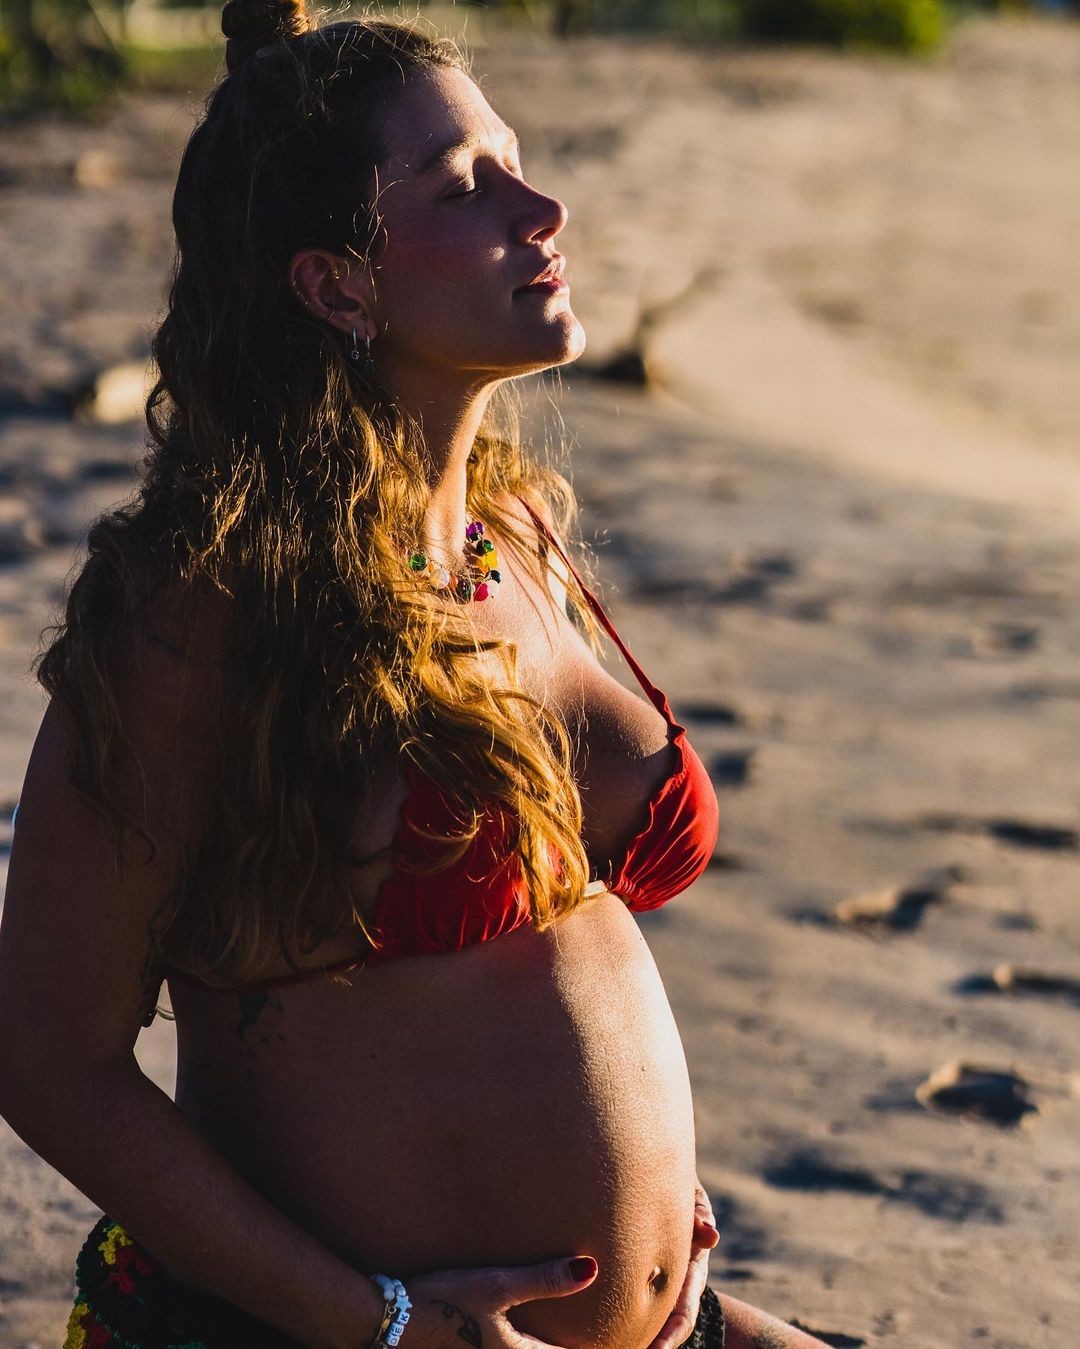 Gabriela Pugliesi - A influenciadora fitness anunciou em maio que estava grávida do primeiro filho, fruto de seu relacionamento com Tulio Dek. O bebê se chamará Lion.